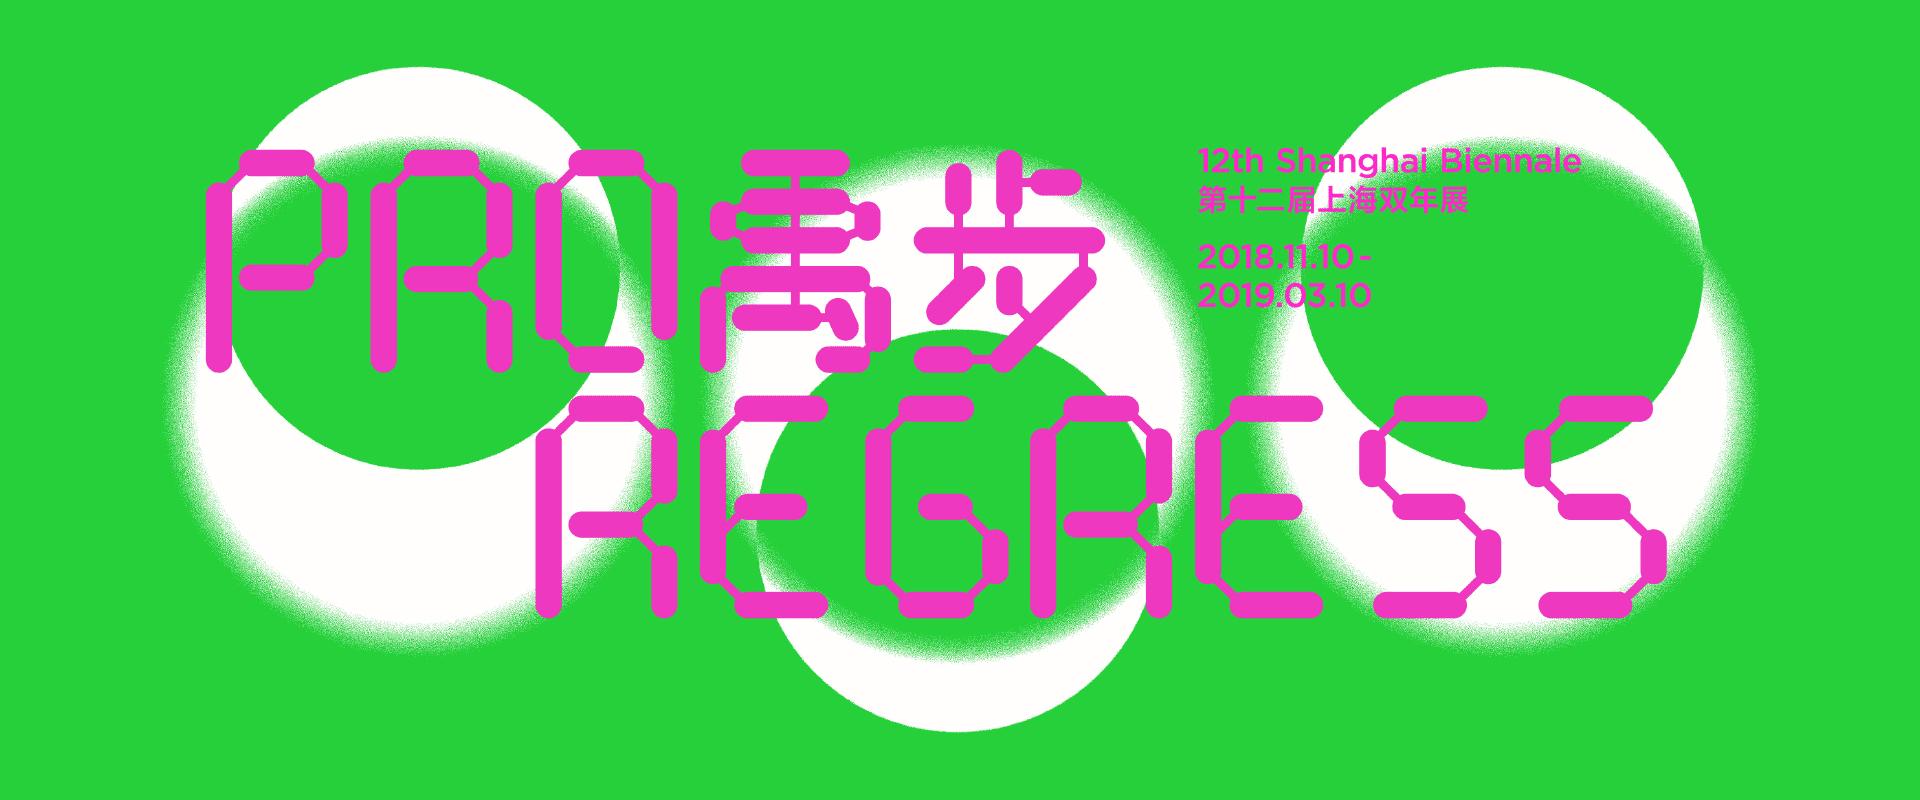 Header Shanghai Biennale